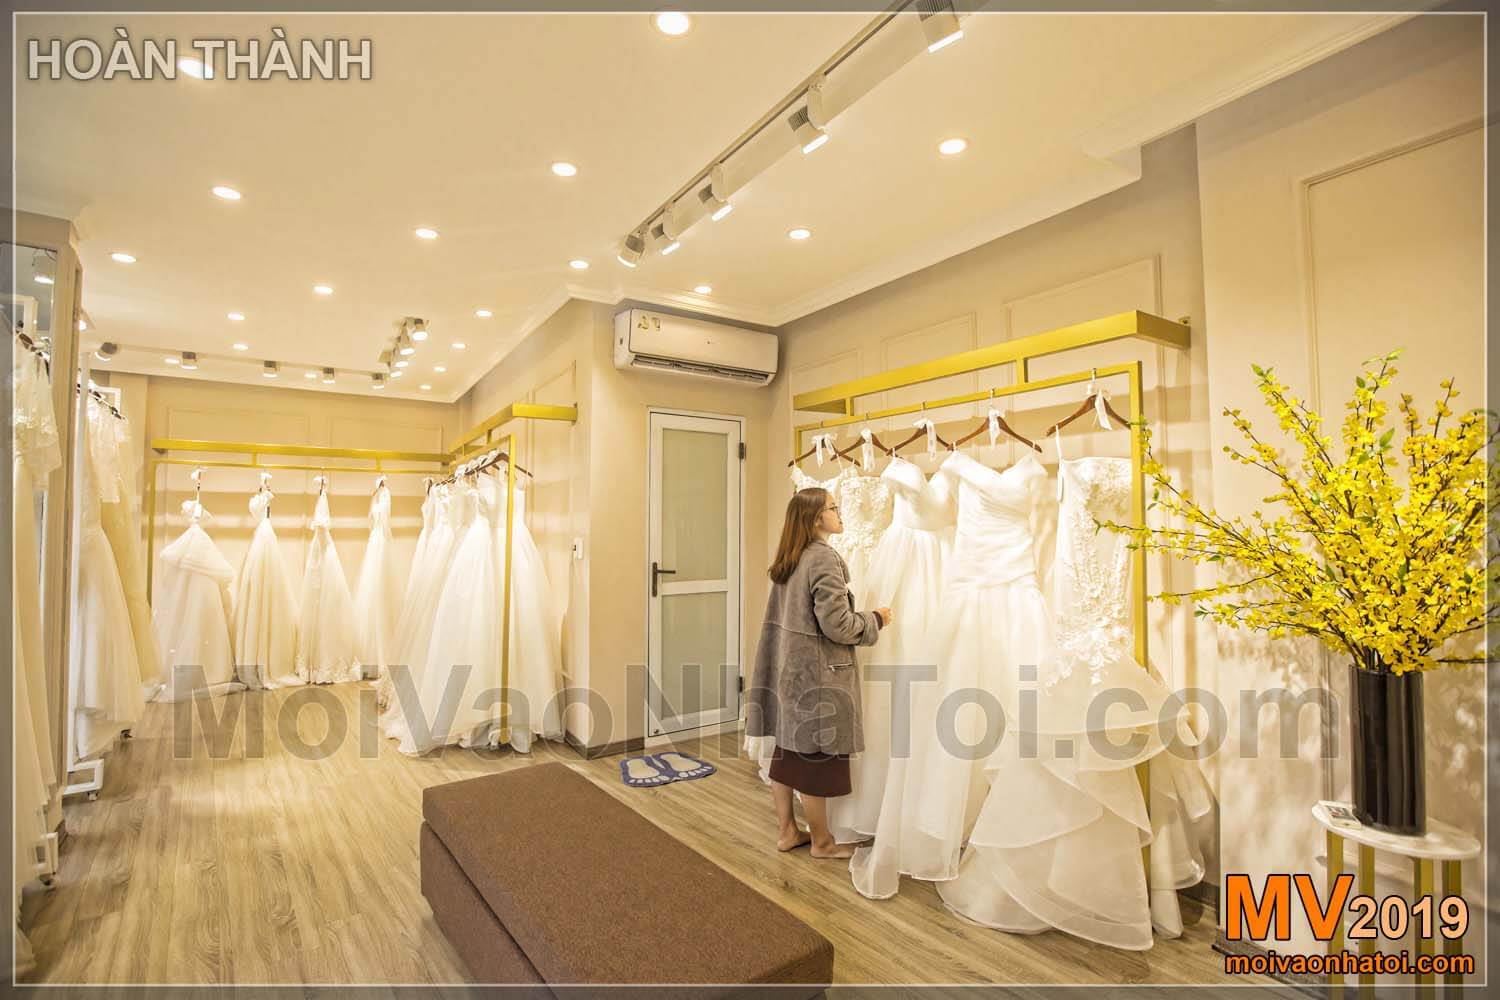 Hochzeitskleid Showroom Design